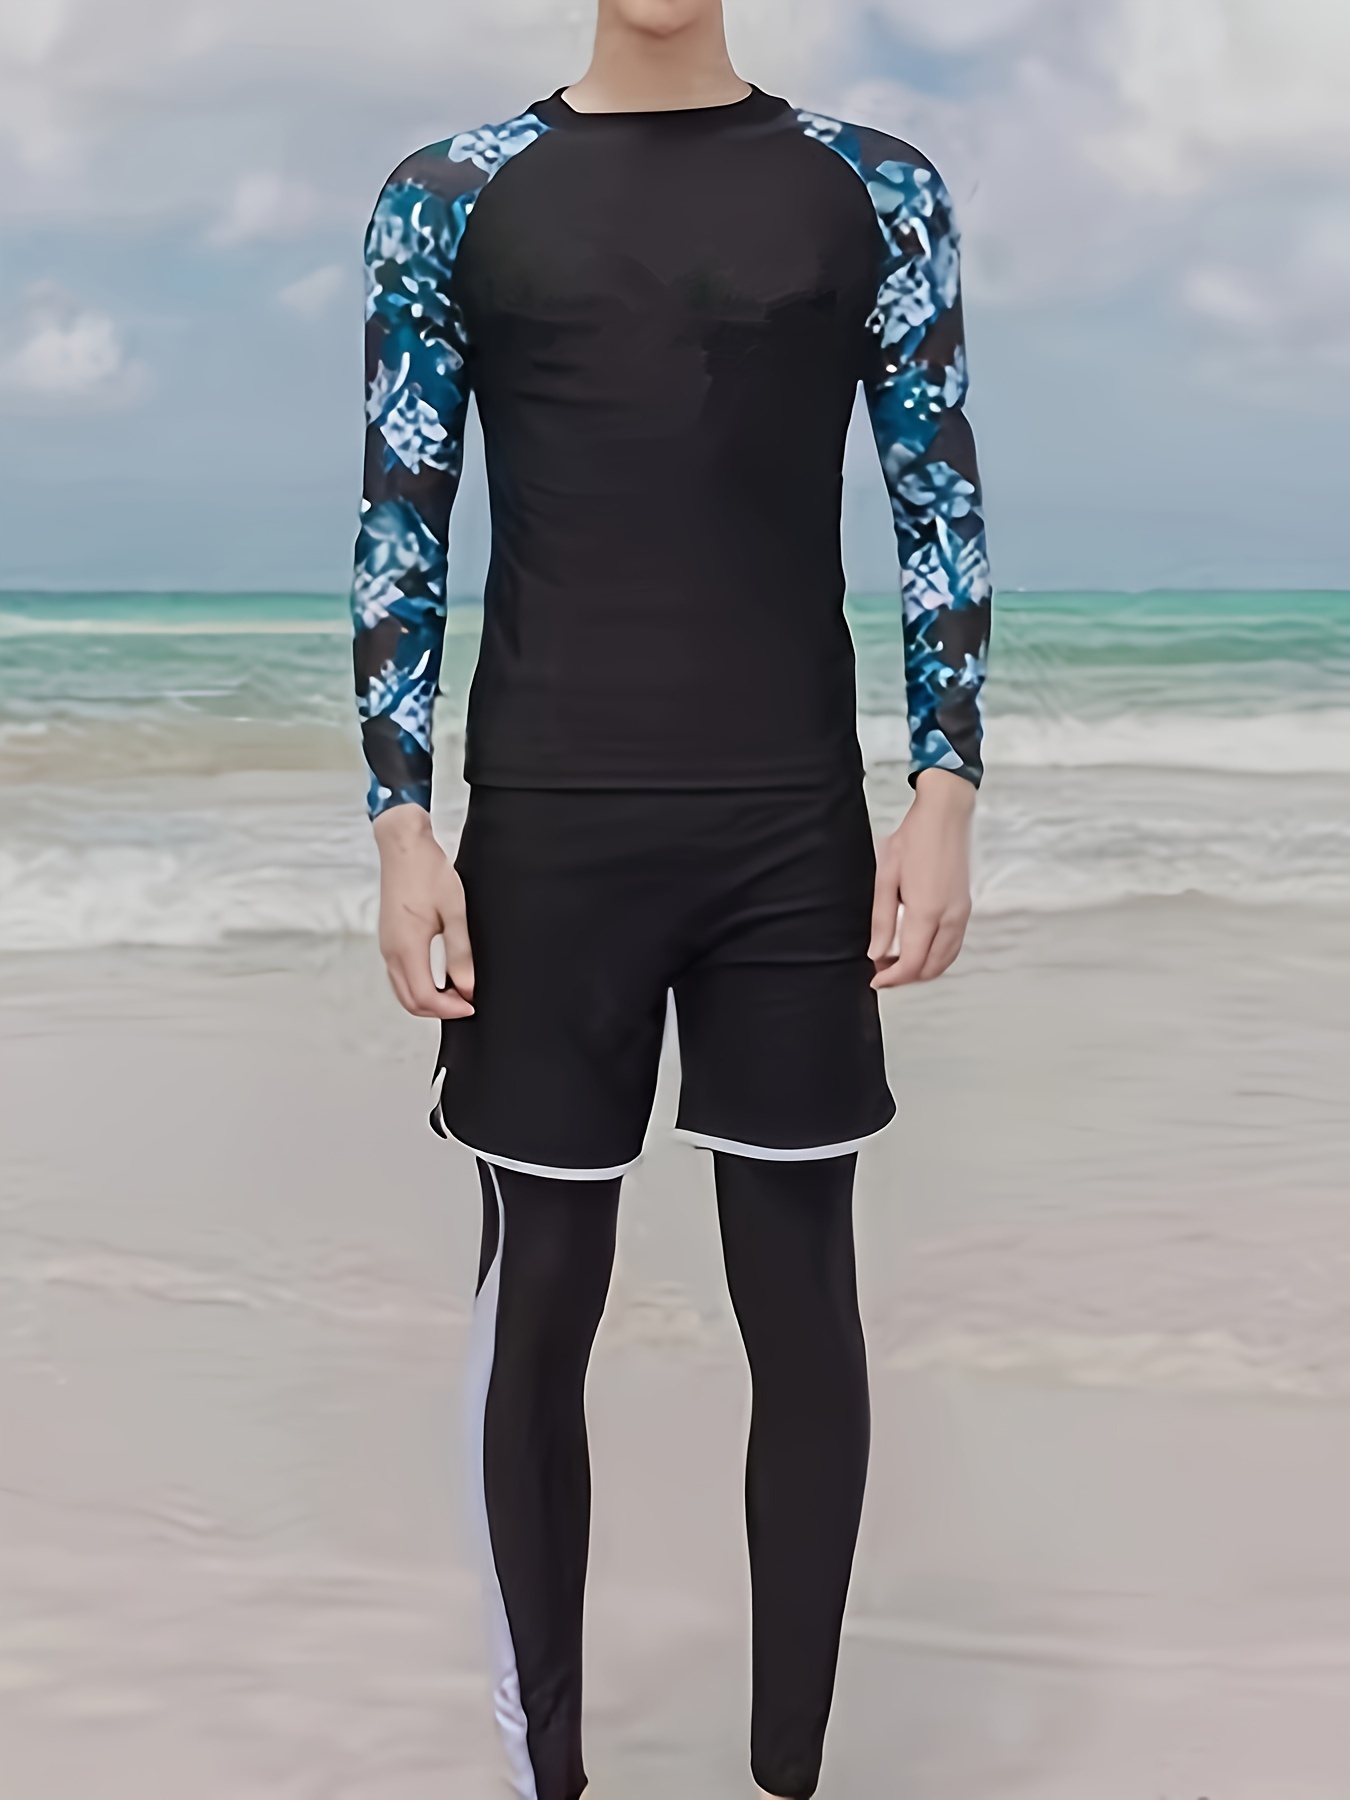 Owntop Shorty - Traje de neopreno para hombre y mujer, 3/2 mm, con  cremallera trasera, para buceo, surf, natación, deportes acuáticos